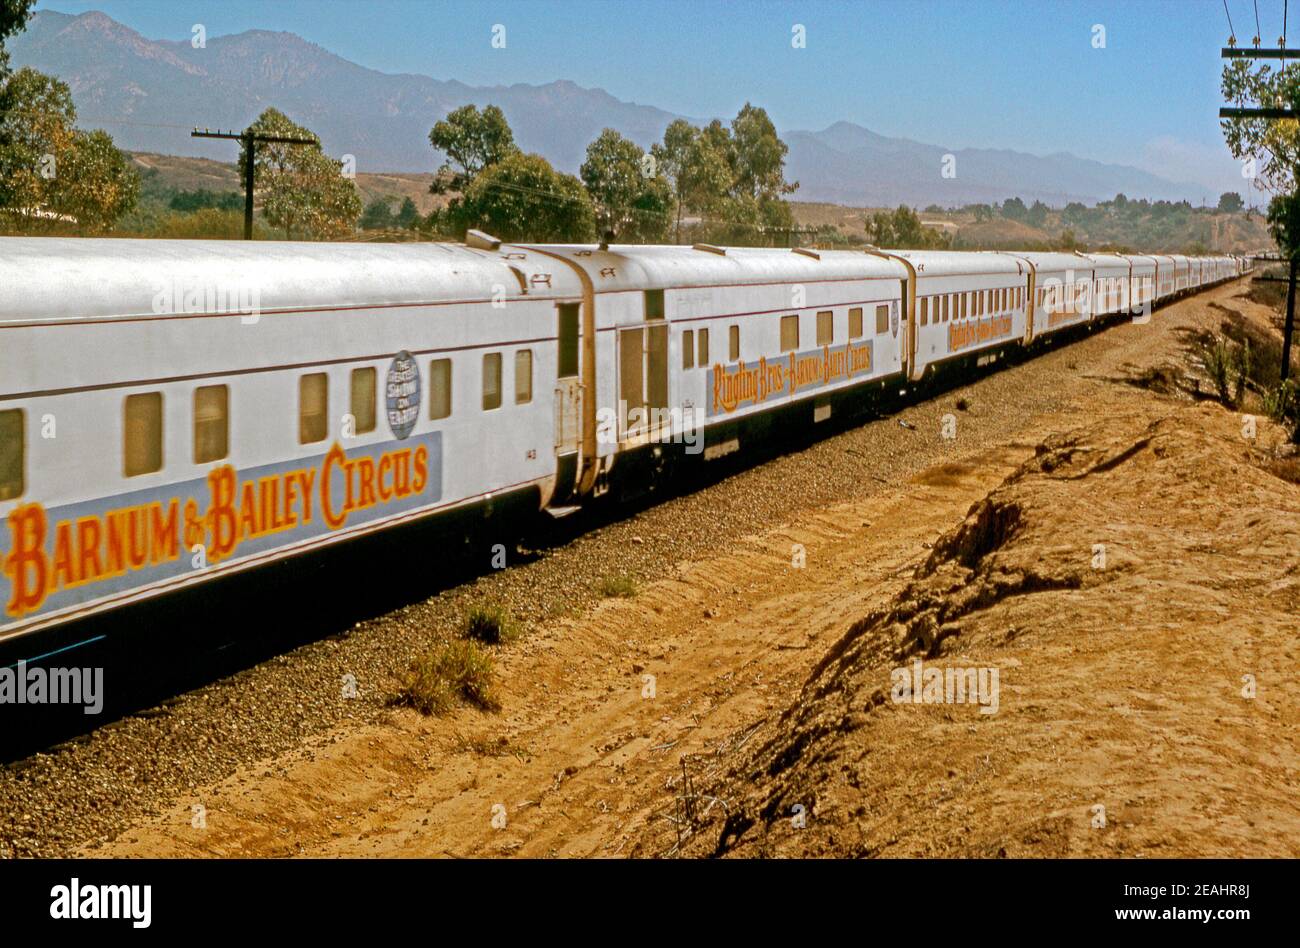 El tren de Ringling Bros y Barnum y Bailey Circus en las zonas rurales de EE.UU. En 1972. Fue llamado 'el mayor espectáculo de la Tierra'. Los trenes se utilizaron por primera vez en 1872 y este tren es arrastrado por dos locomotoras diésel GP35 del Pacífico Sur. Los trenes se extendían a más de una milla de largo. Esta imagen es de una antigua transparencia de color de 35 mm de Kodak amateur. Foto de stock